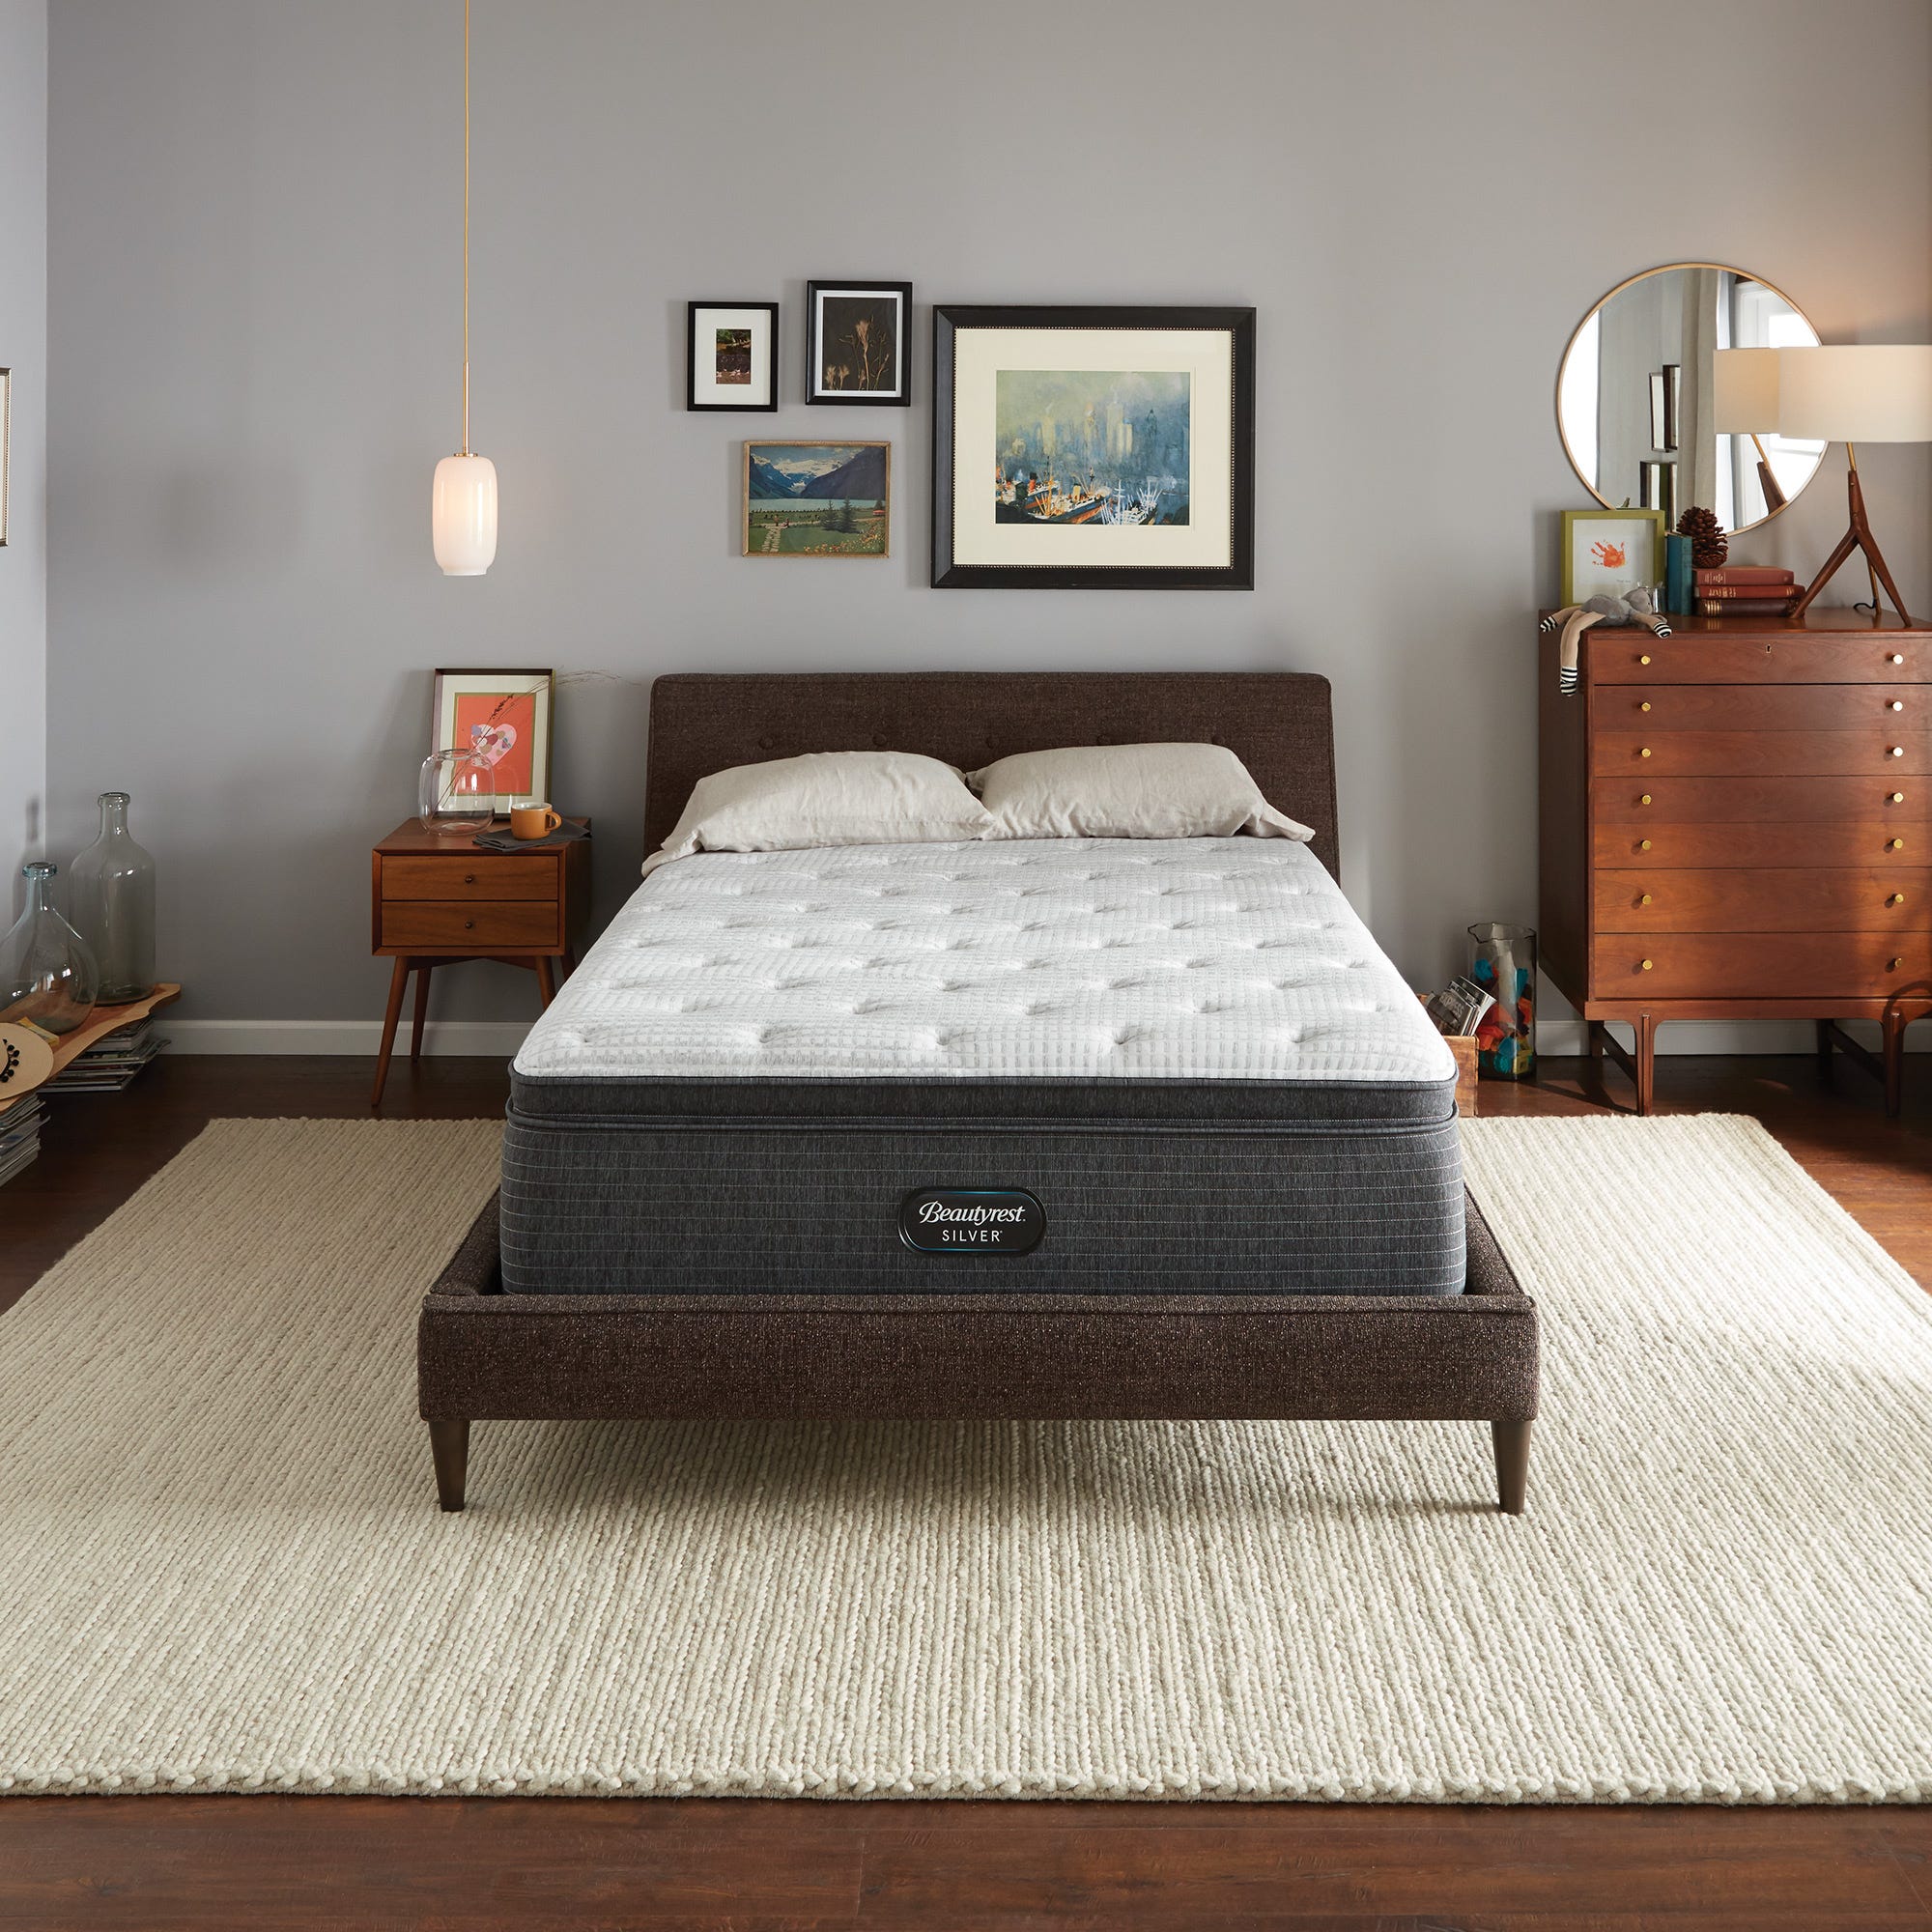 http://www.us-mattress.com/cdn/shop/files/simmons-beautyrest-silver-level-2-brs900-c-plush-pillow-top-new-1_2deec43c-1dca-4f66-840b-9fbedeb08306.jpg?v=1692838180